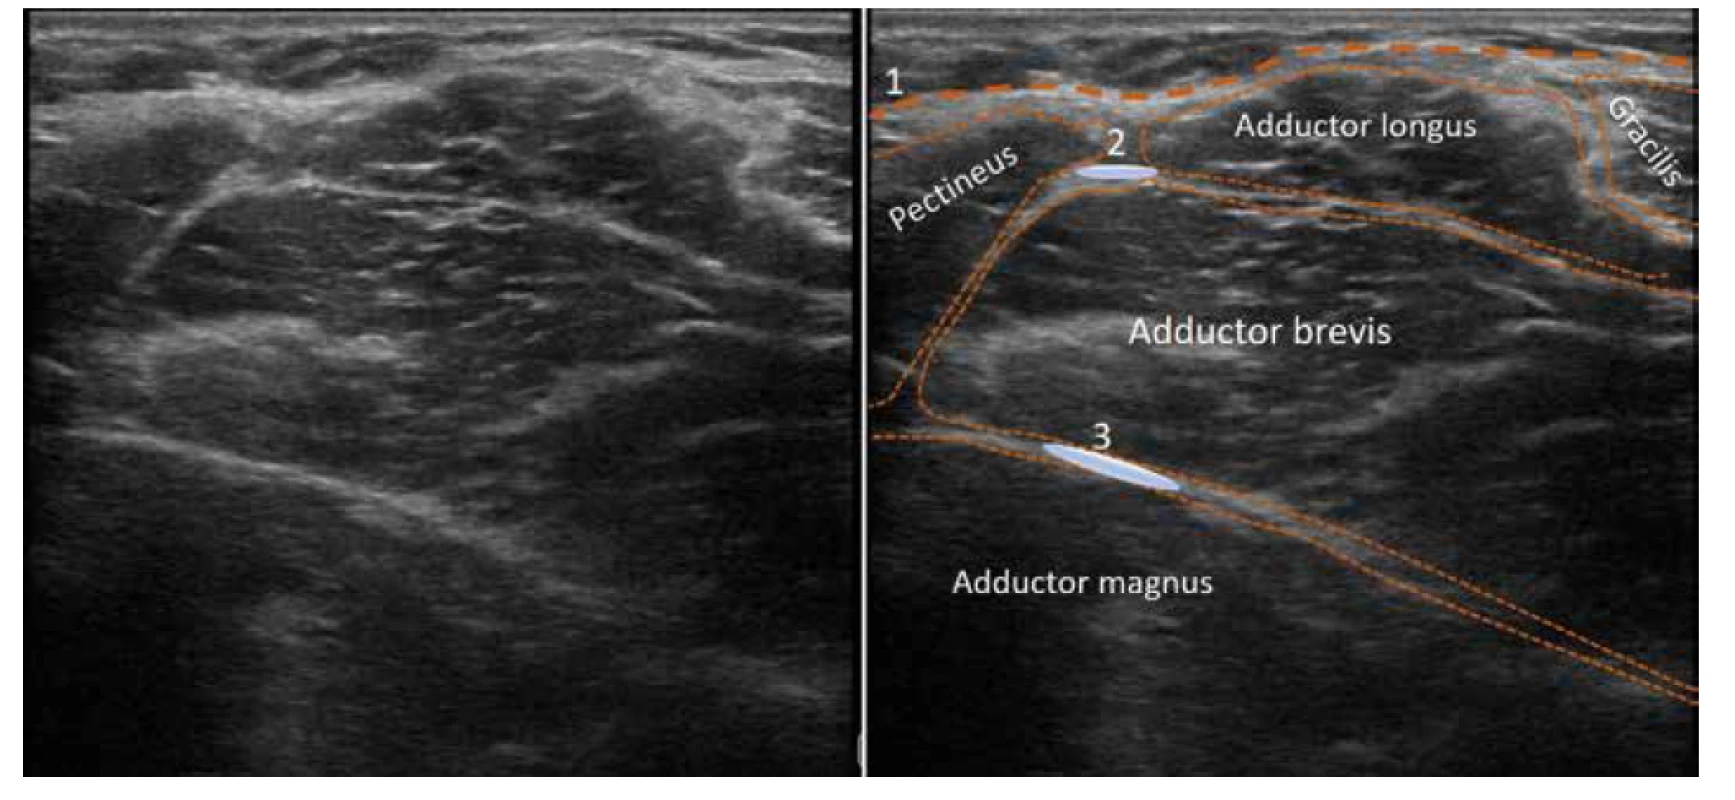 Ultrazvukový obraz proximální mediální části stehna. 1. fascia lata, 2. aplikační oblast pro blokádu n. obturatorius anterior, 3. aplikační oblast
pro blokádu n. obturatorius posterior